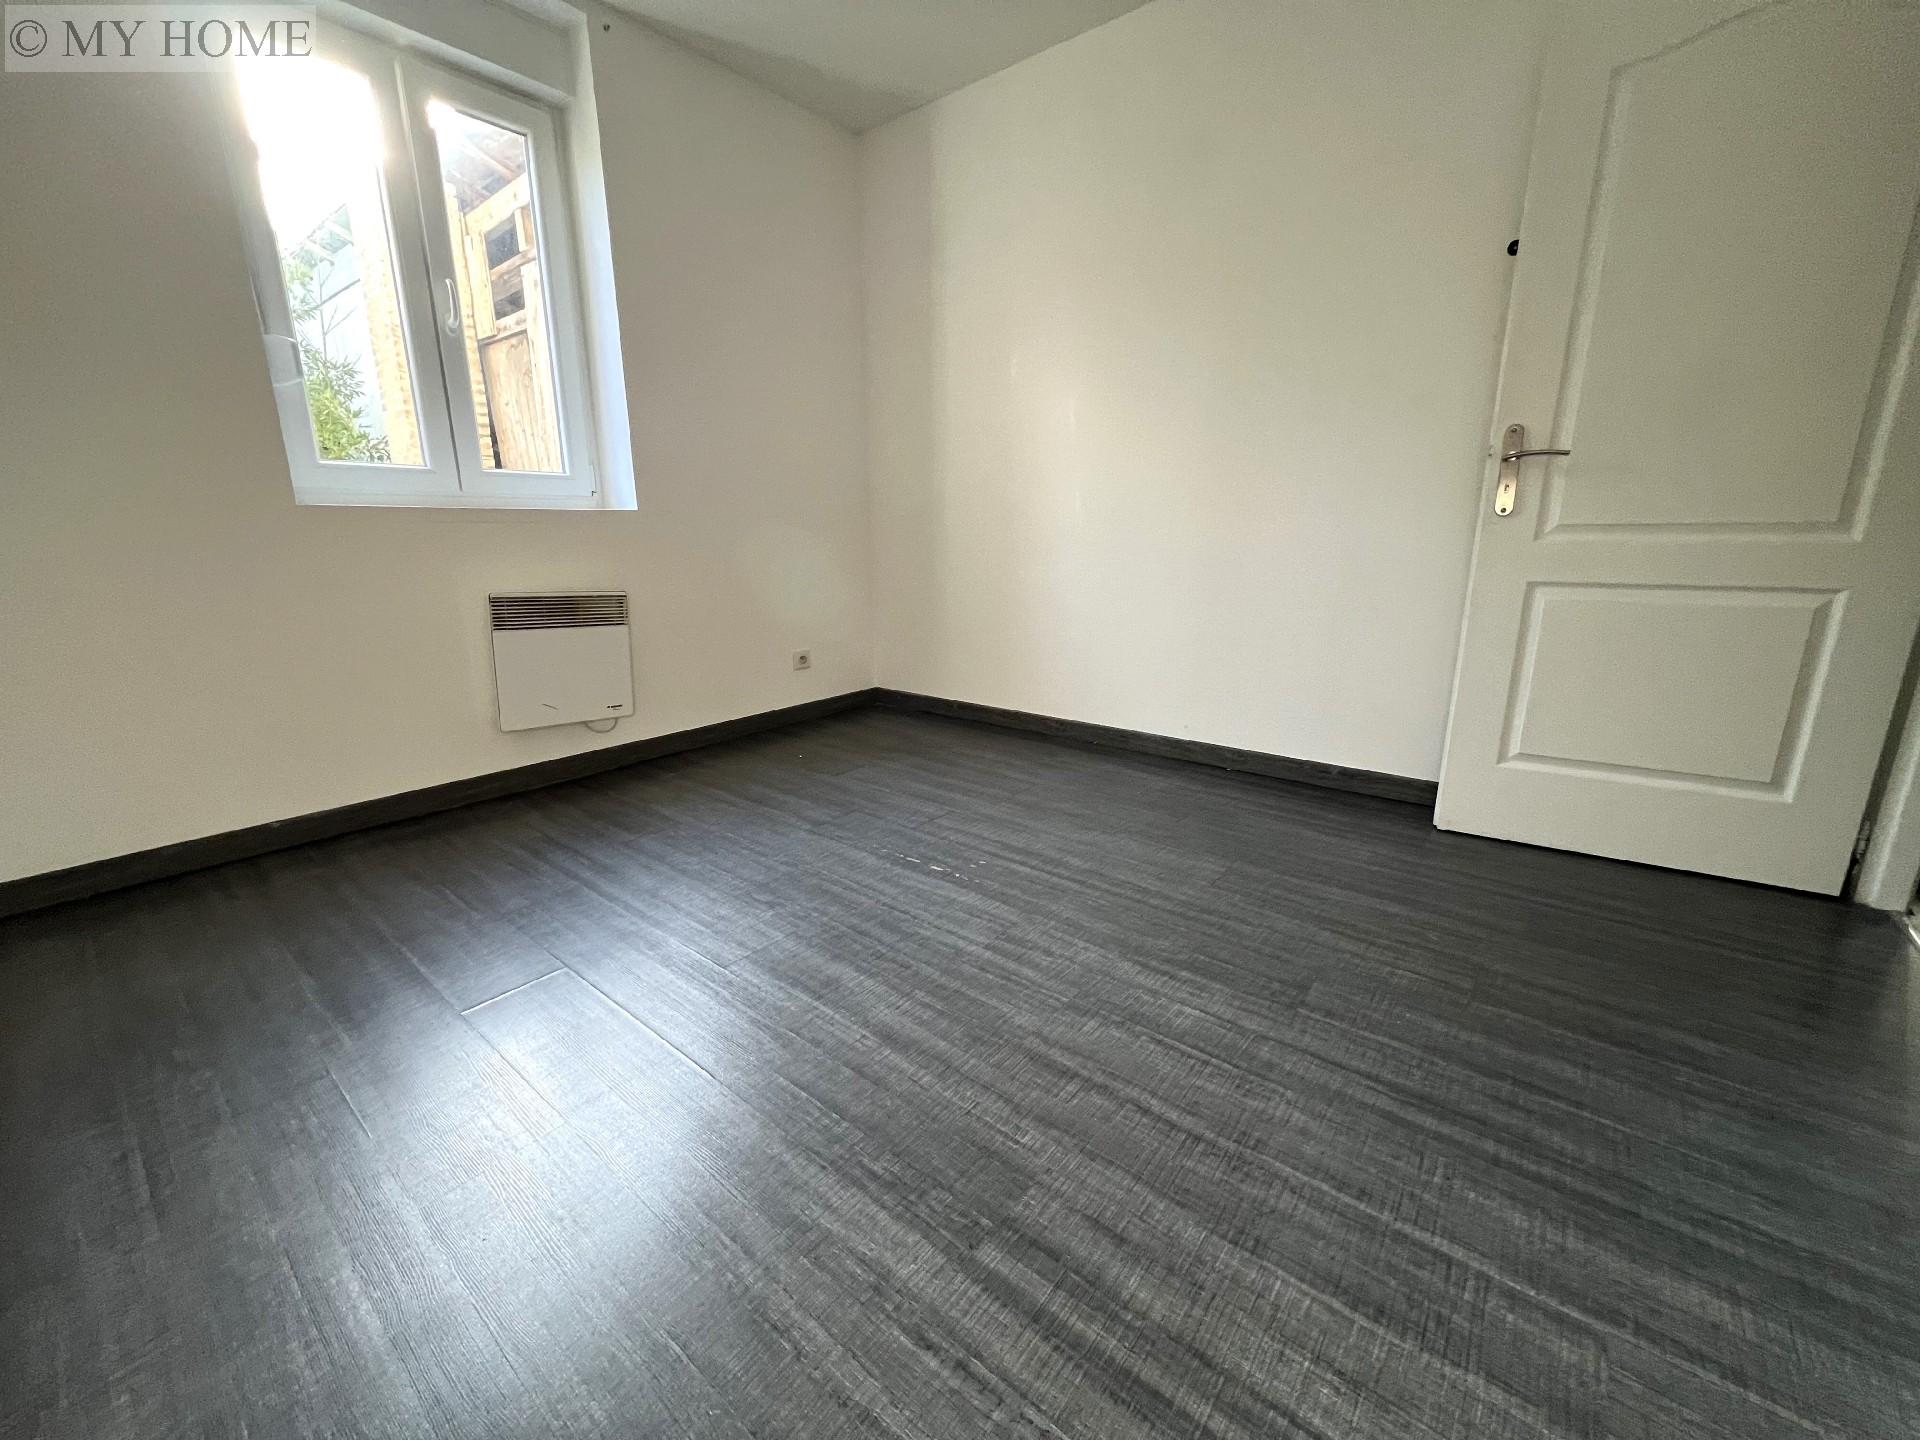 Vente appartement - TOUL 96 m², 4 pièces